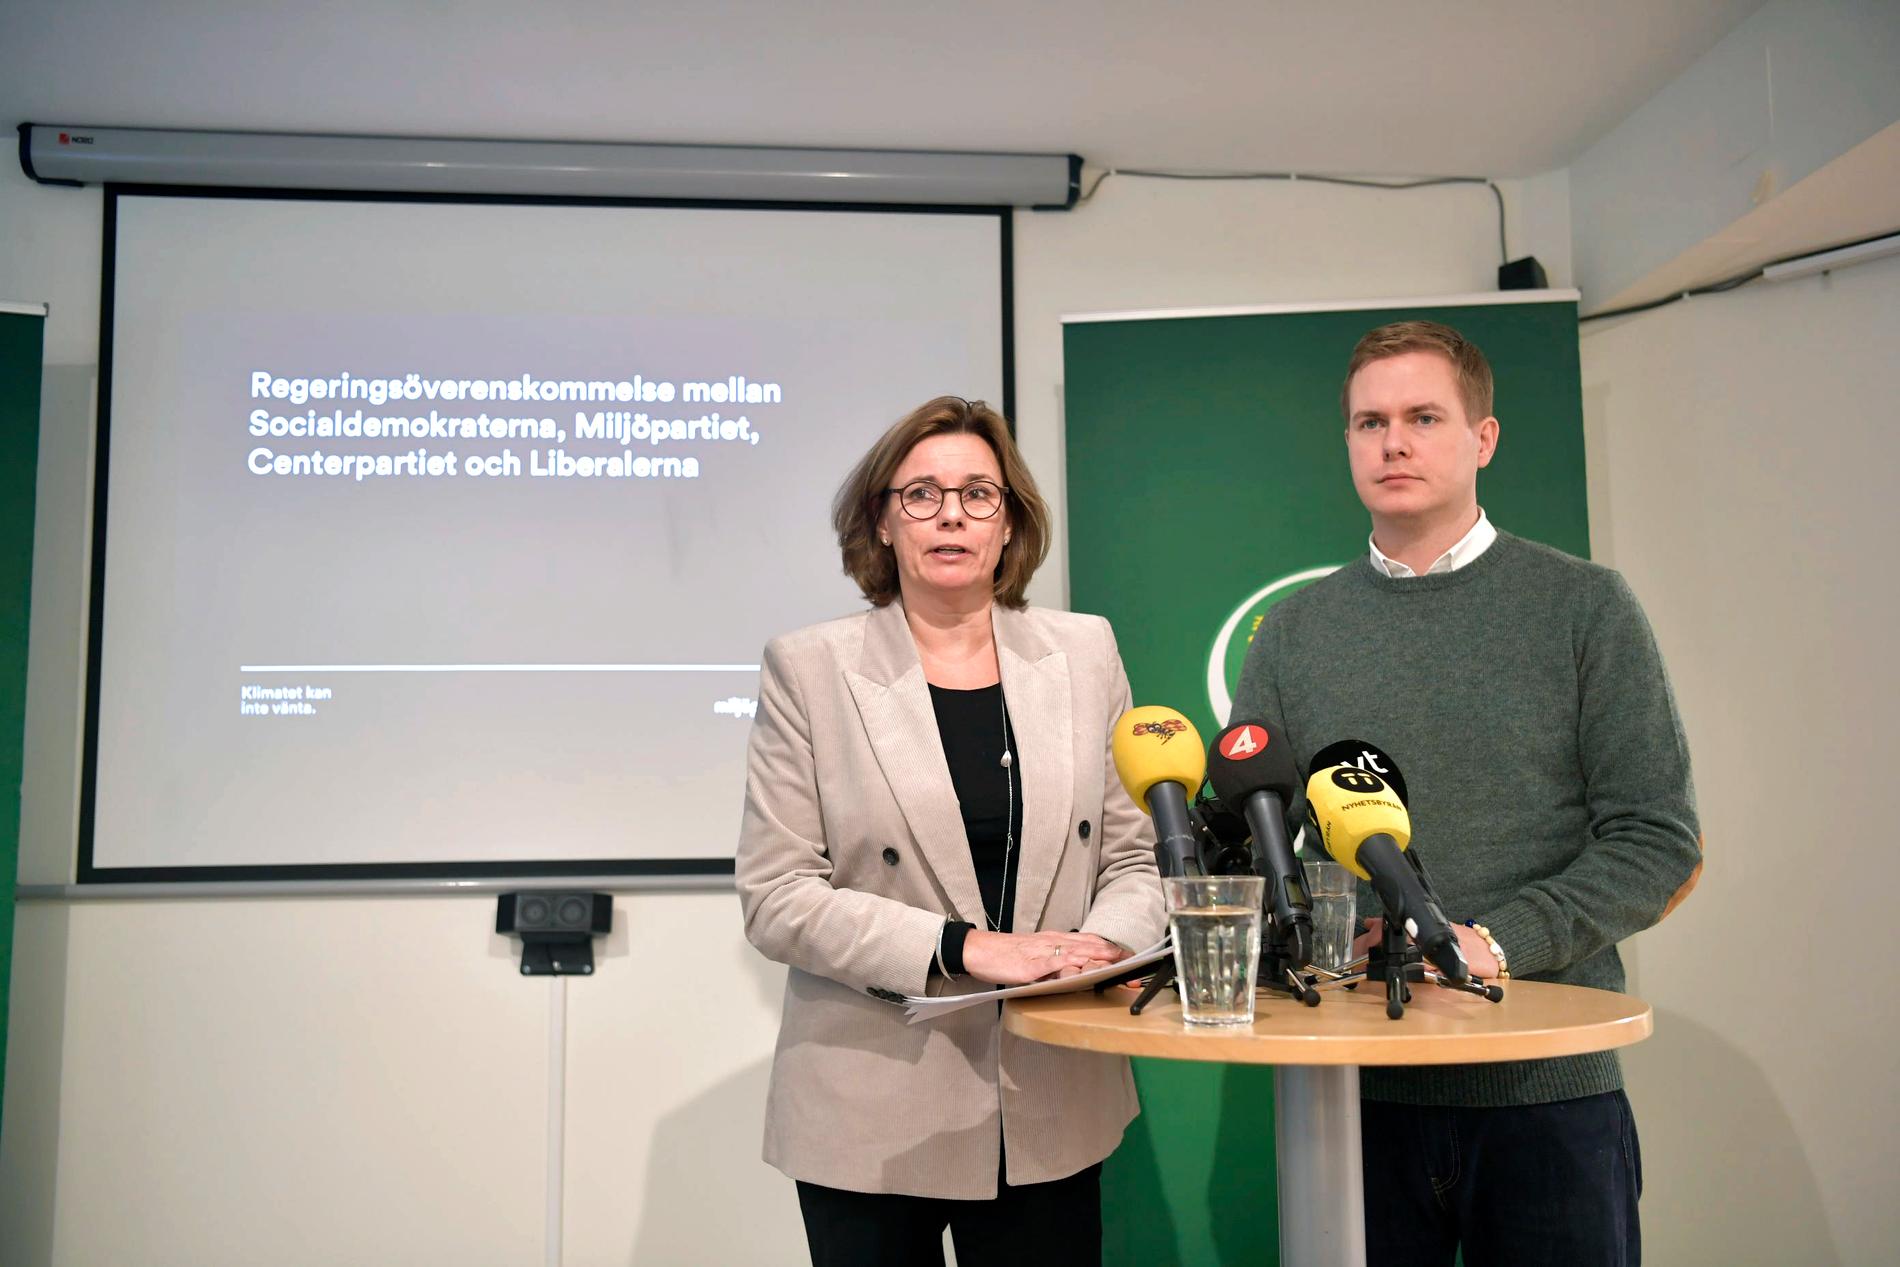 Språkrören Gustav Fridolin och Isabella Lövin har kallat till pressträff på förmiddagen för att berätta om partistyrelsens beslut.